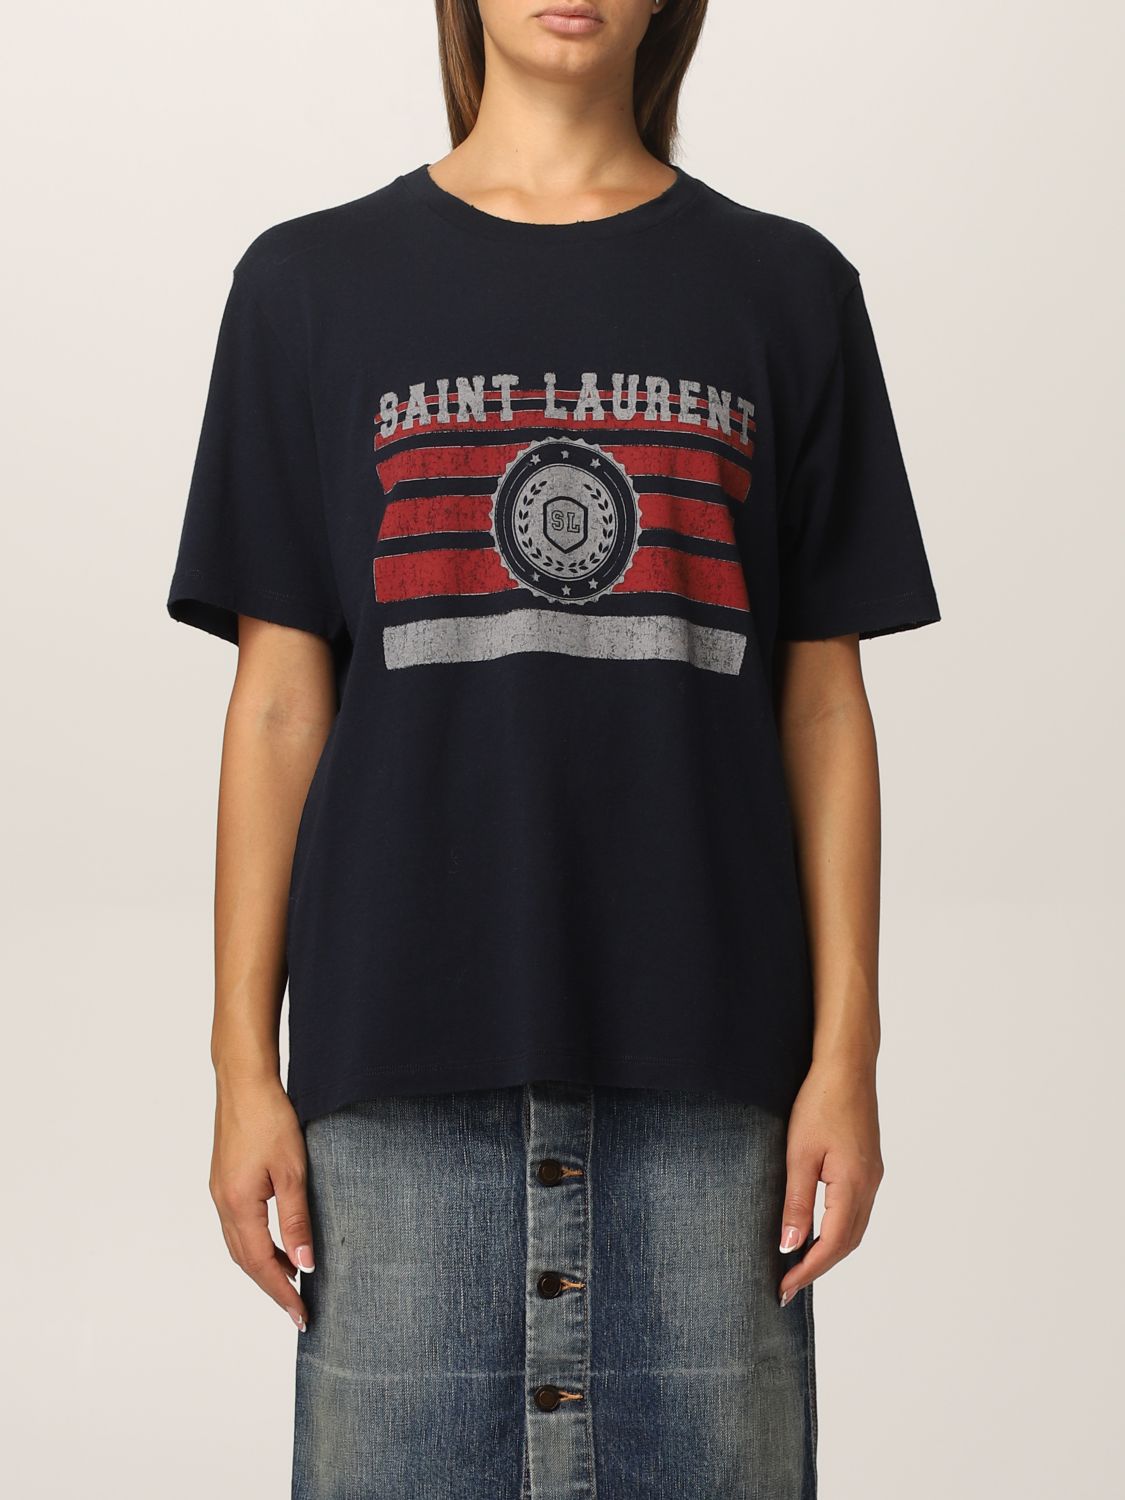 Camiseta Saint Laurent: Camiseta mujer Saint Laurent azul oscuro 1